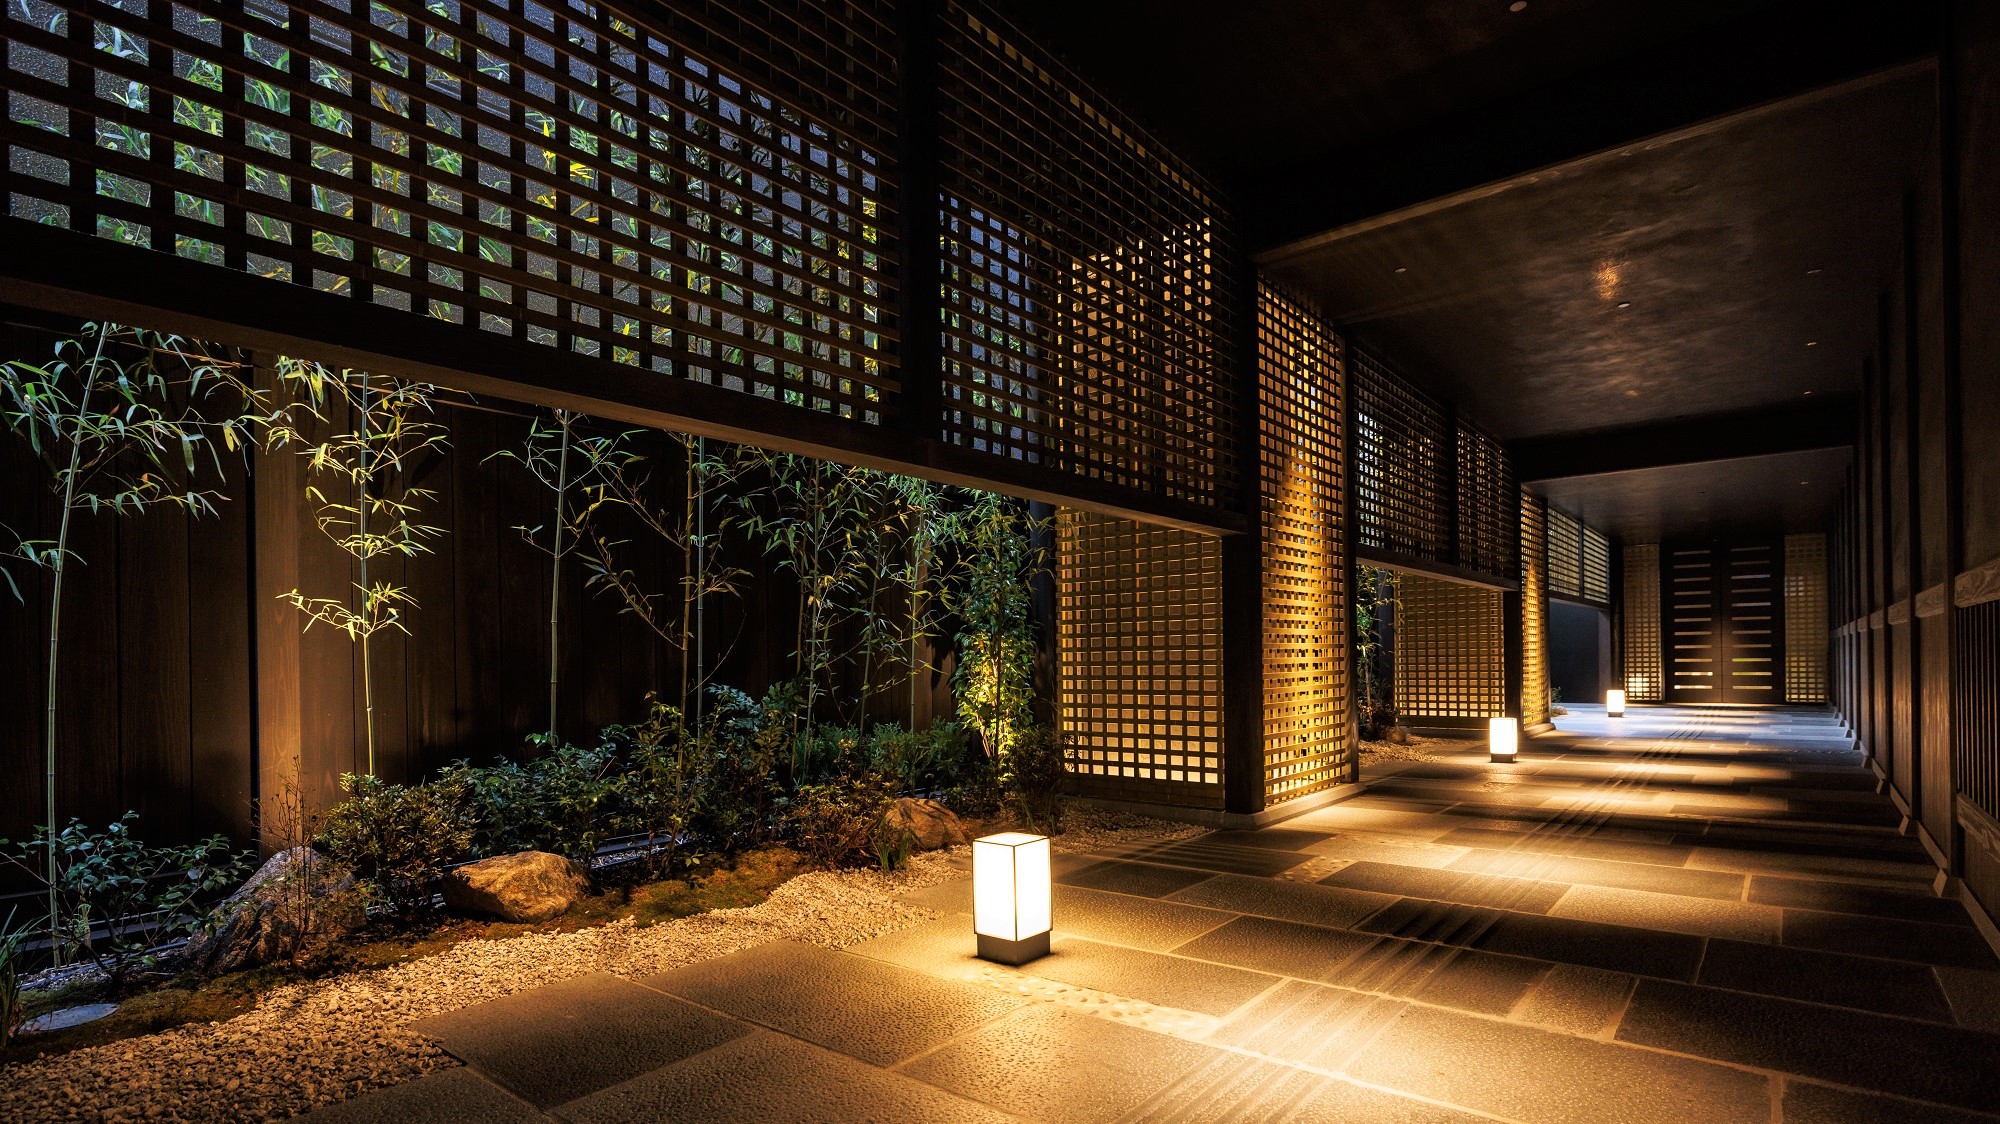 【通り庭】伝統的な京町家を貫く「通り庭」をイメージ、オリジナルお香の匂いでお迎え